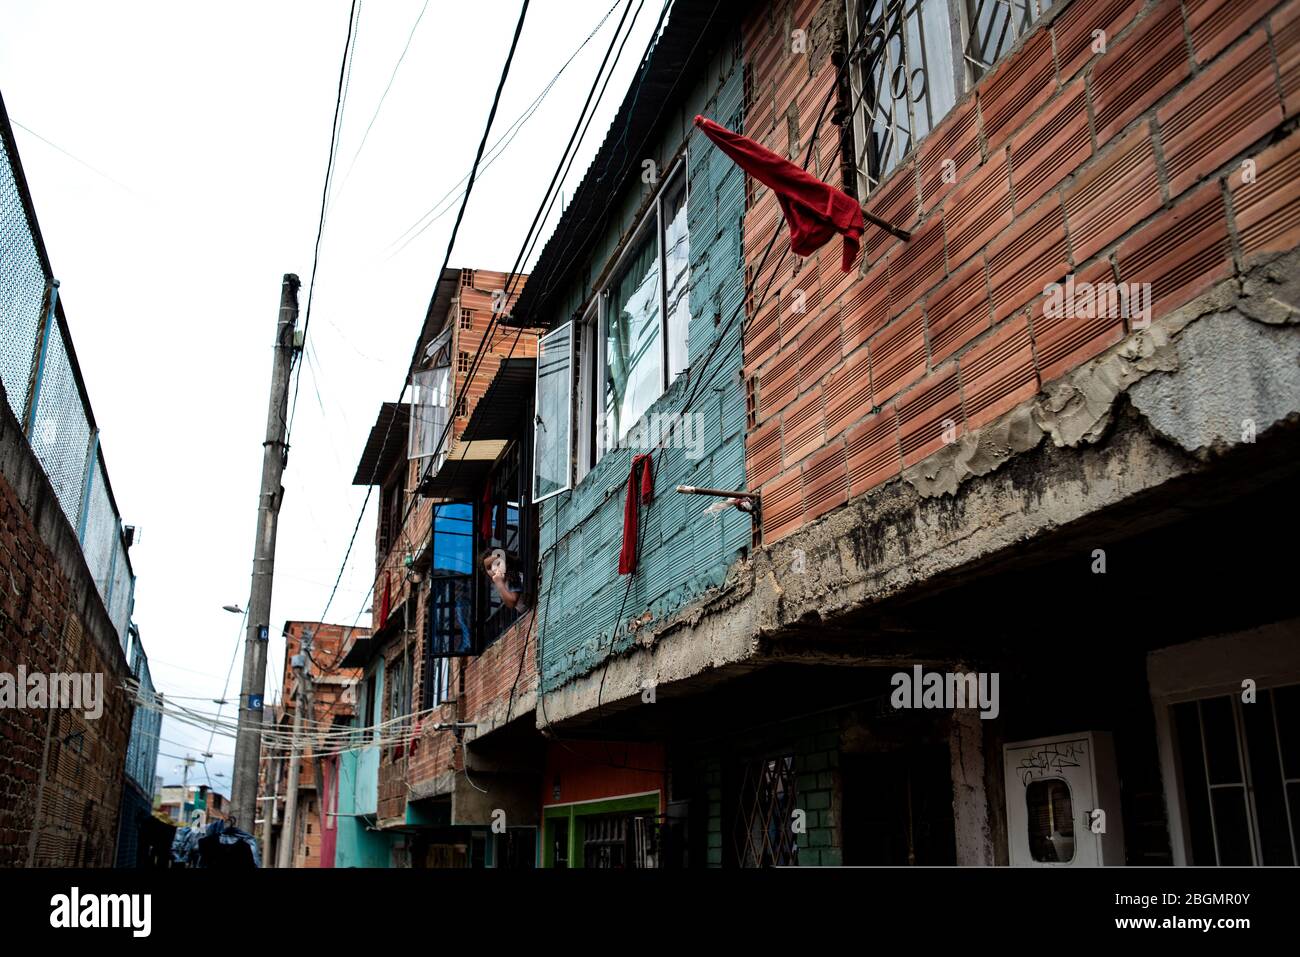 Ciudad Bolivar, Colombie. 22 avril 2020. Des chiffons rouges sont accrochés  à la façade de plusieurs maisons de la municipalité de Ciudad Bolivar, au  sud de Bogota. Les foulards rouges sont devenus